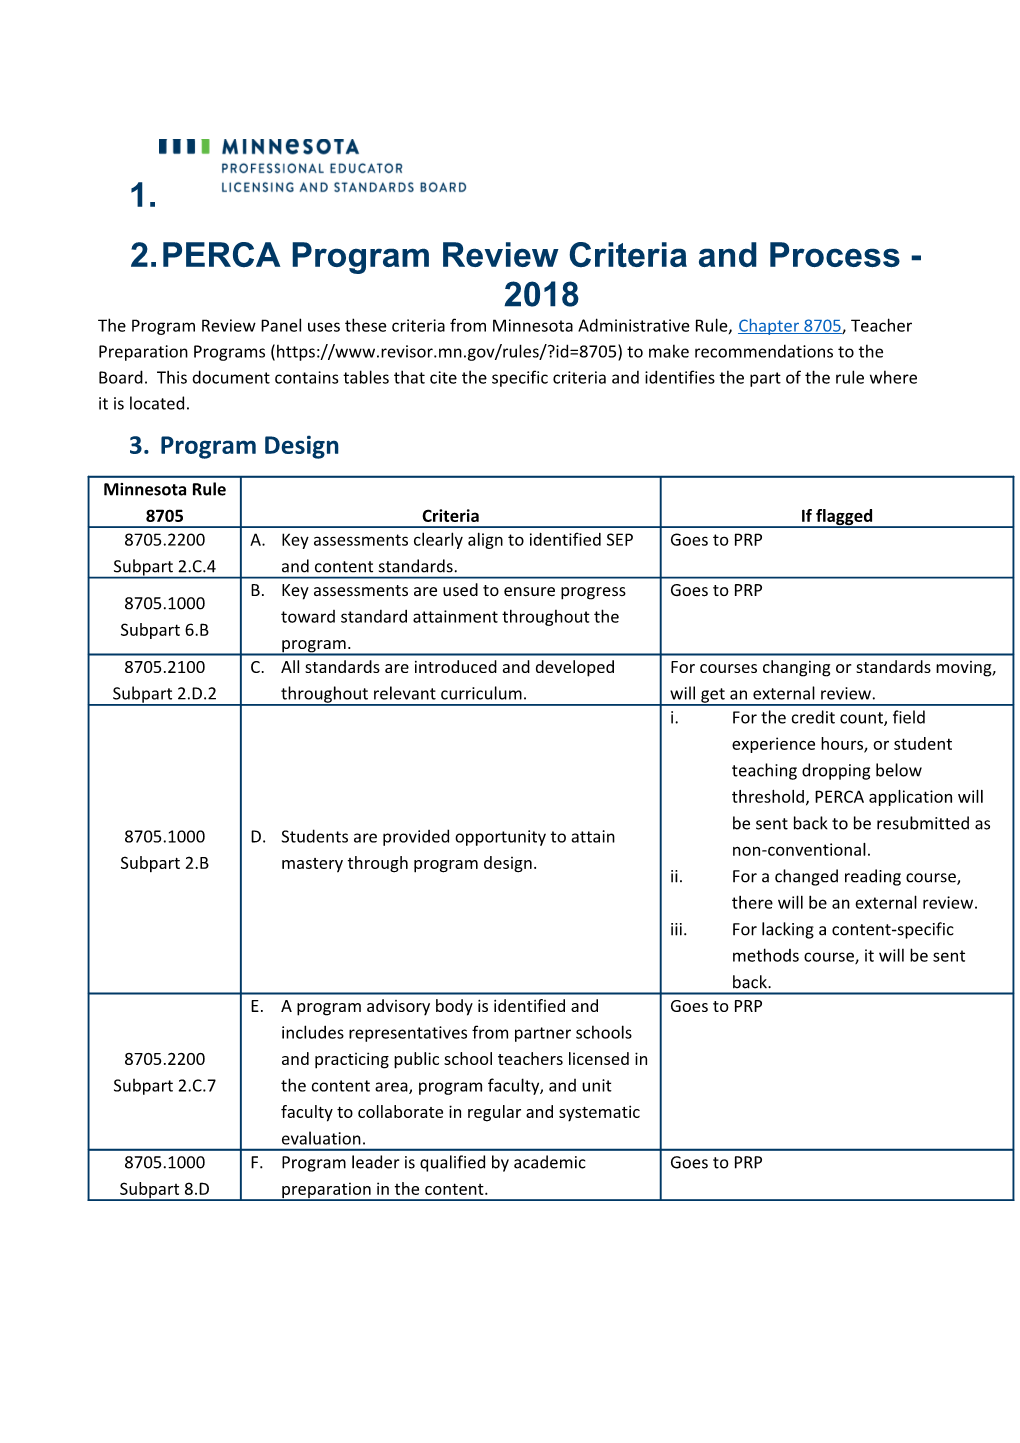 PERCA Program Review Criteria and Process - 2018